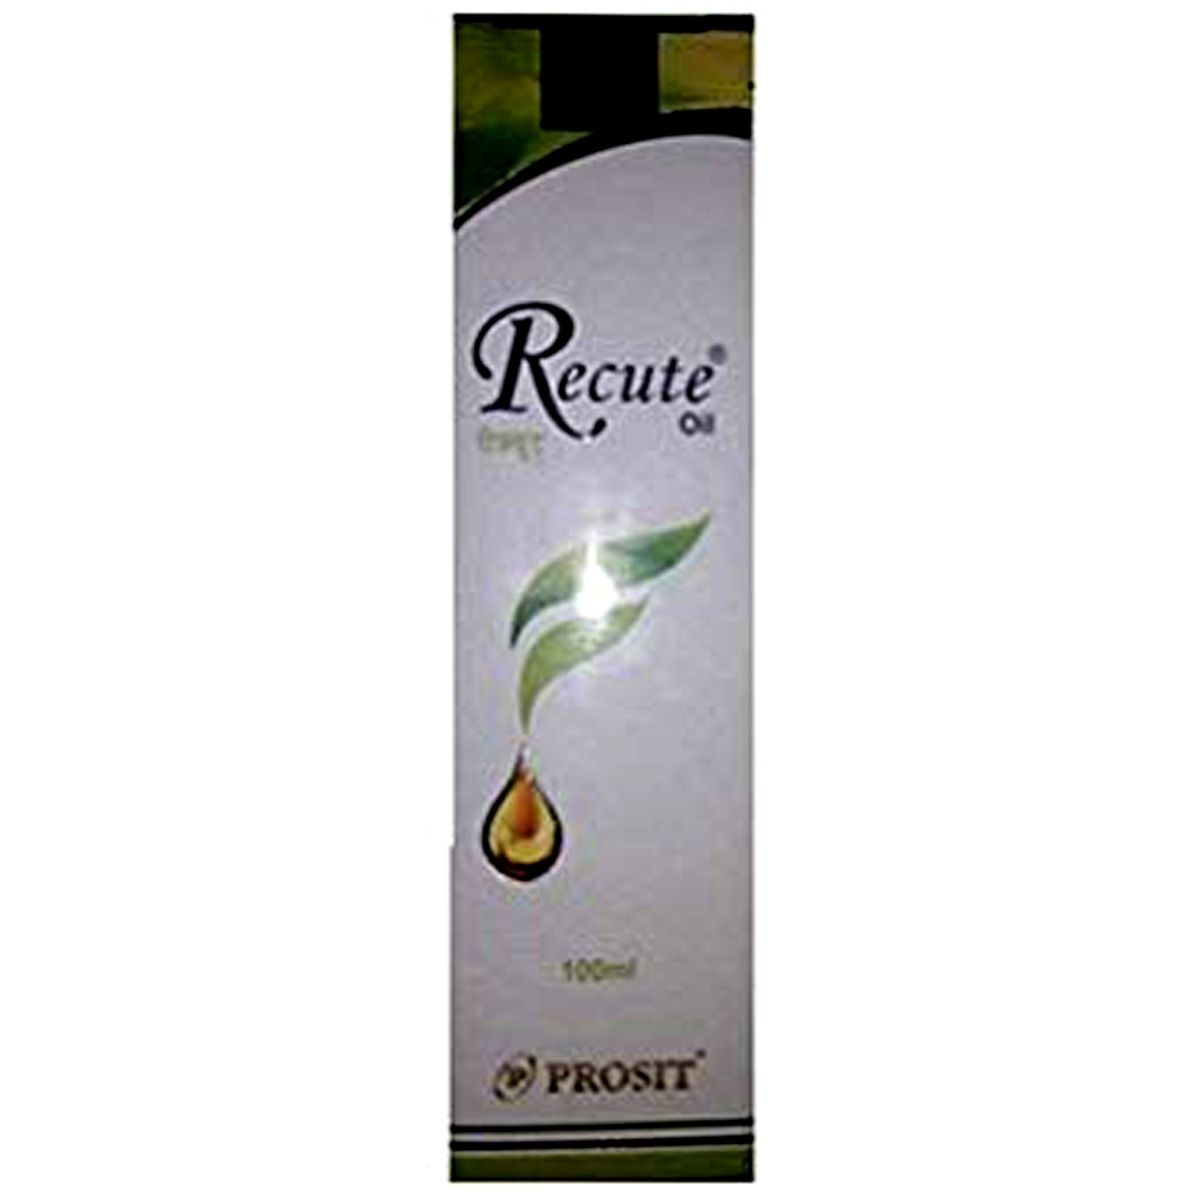 Buy Recute Hair Oil, 100 ml Online